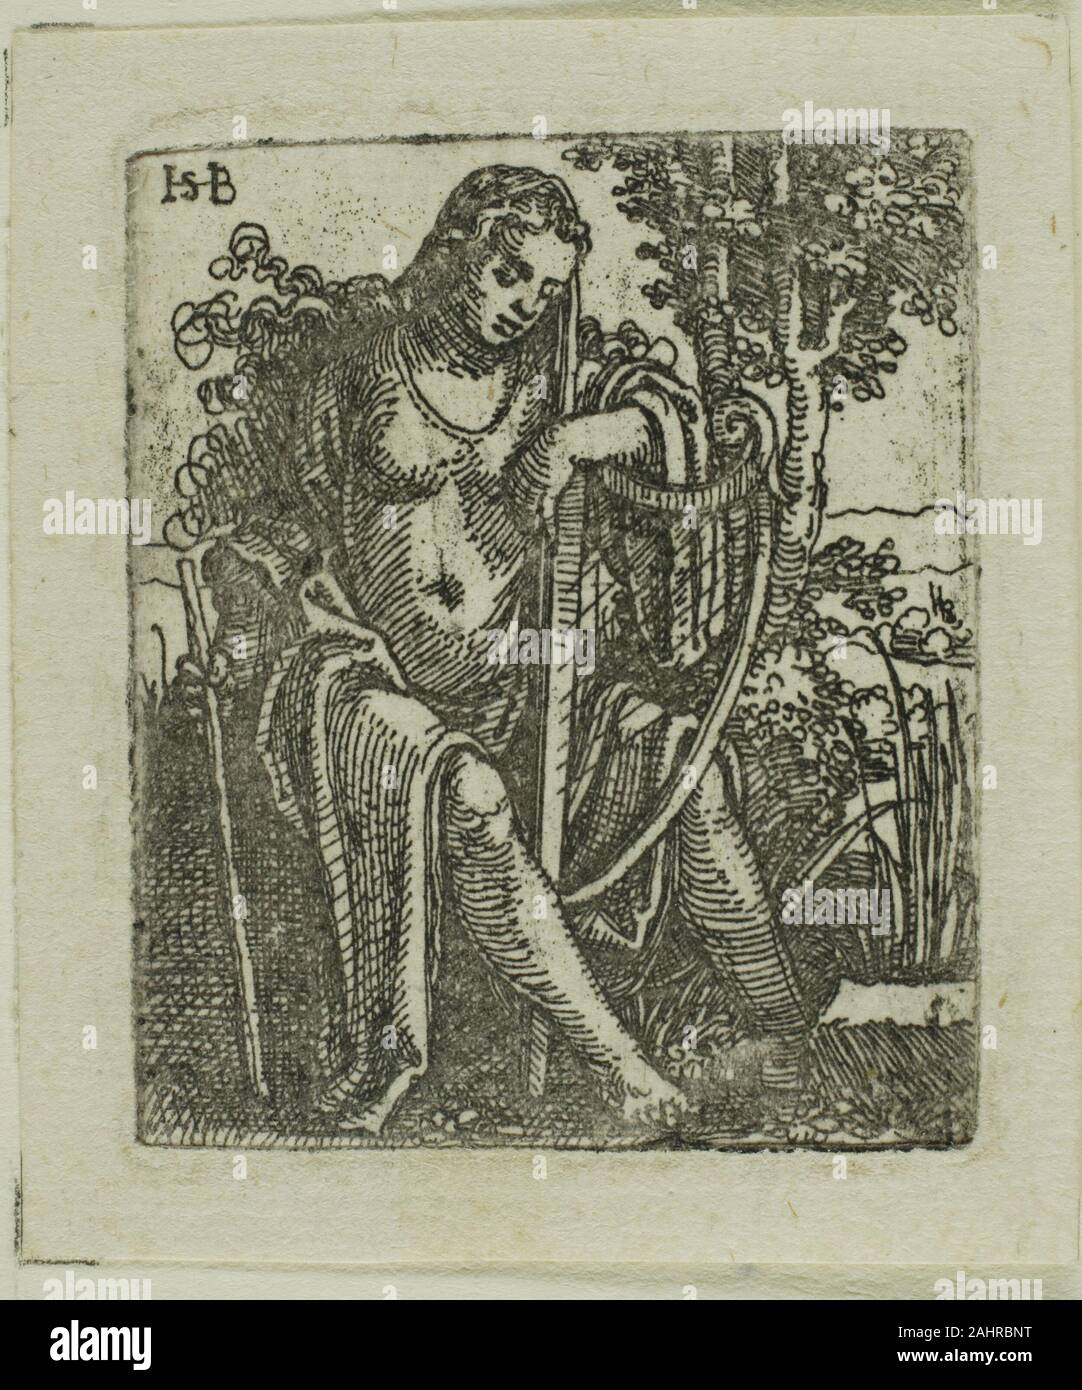 Hans Sebald Beham. Femme avec une harpe. 1520-1530. L'Allemagne. Eau-forte en noir sur papier vergé ivoire qui est cette femme, harpiste assis solennellement dans un paysage boisé est elle une muse une déesse juste une femme ordinaire, le spectateur est laissé à spéculer, comme il n'y a pas suffisamment d'indices pour savoir pour certain. Hans Sebald Beham, l'un des soi-disant maîtres peu allemand, tirages de ce genre qui créent un sentiment d'intimité grâce à leur petite échelle et la proximité de leurs sujets à l'image. Cette gravure est encore plus petite que beaucoup de ses estampes, obligeant les spectateurs à se rapprocher d'observer Banque D'Images